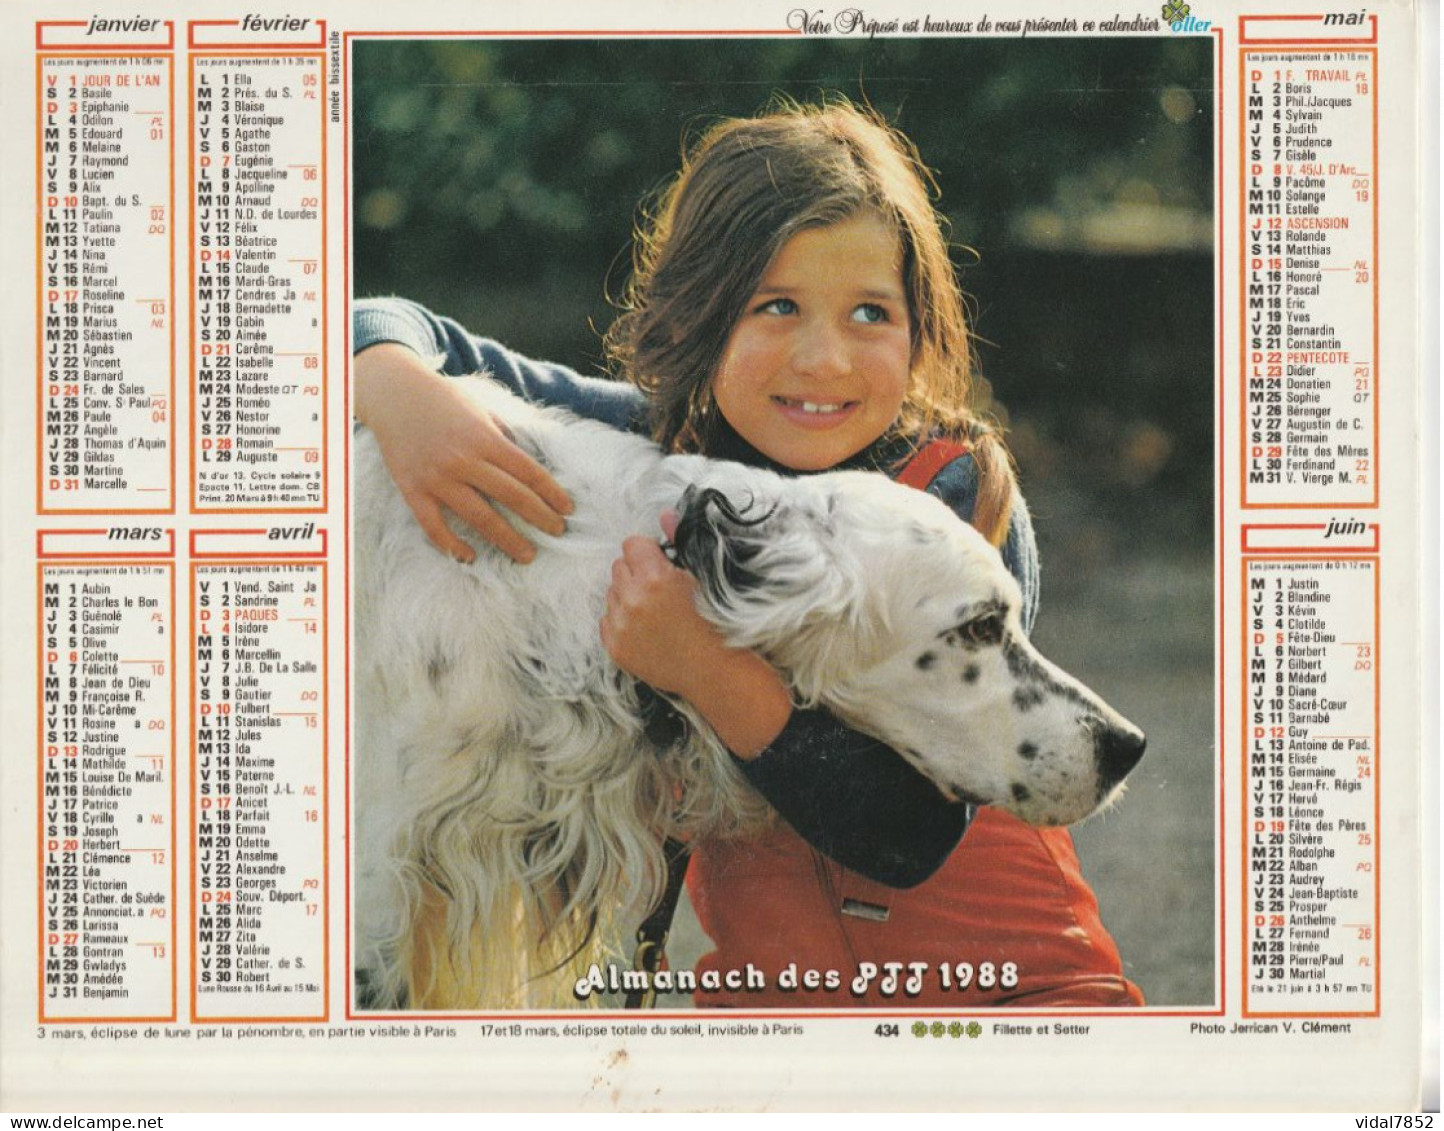 Calendrier-Almanach Des P.T.T 1988-Poster Intérieur JEAN JACQUES GOLDMAN -OLLER Département AIN-01-Référence 440 - Grossformat : 1981-90